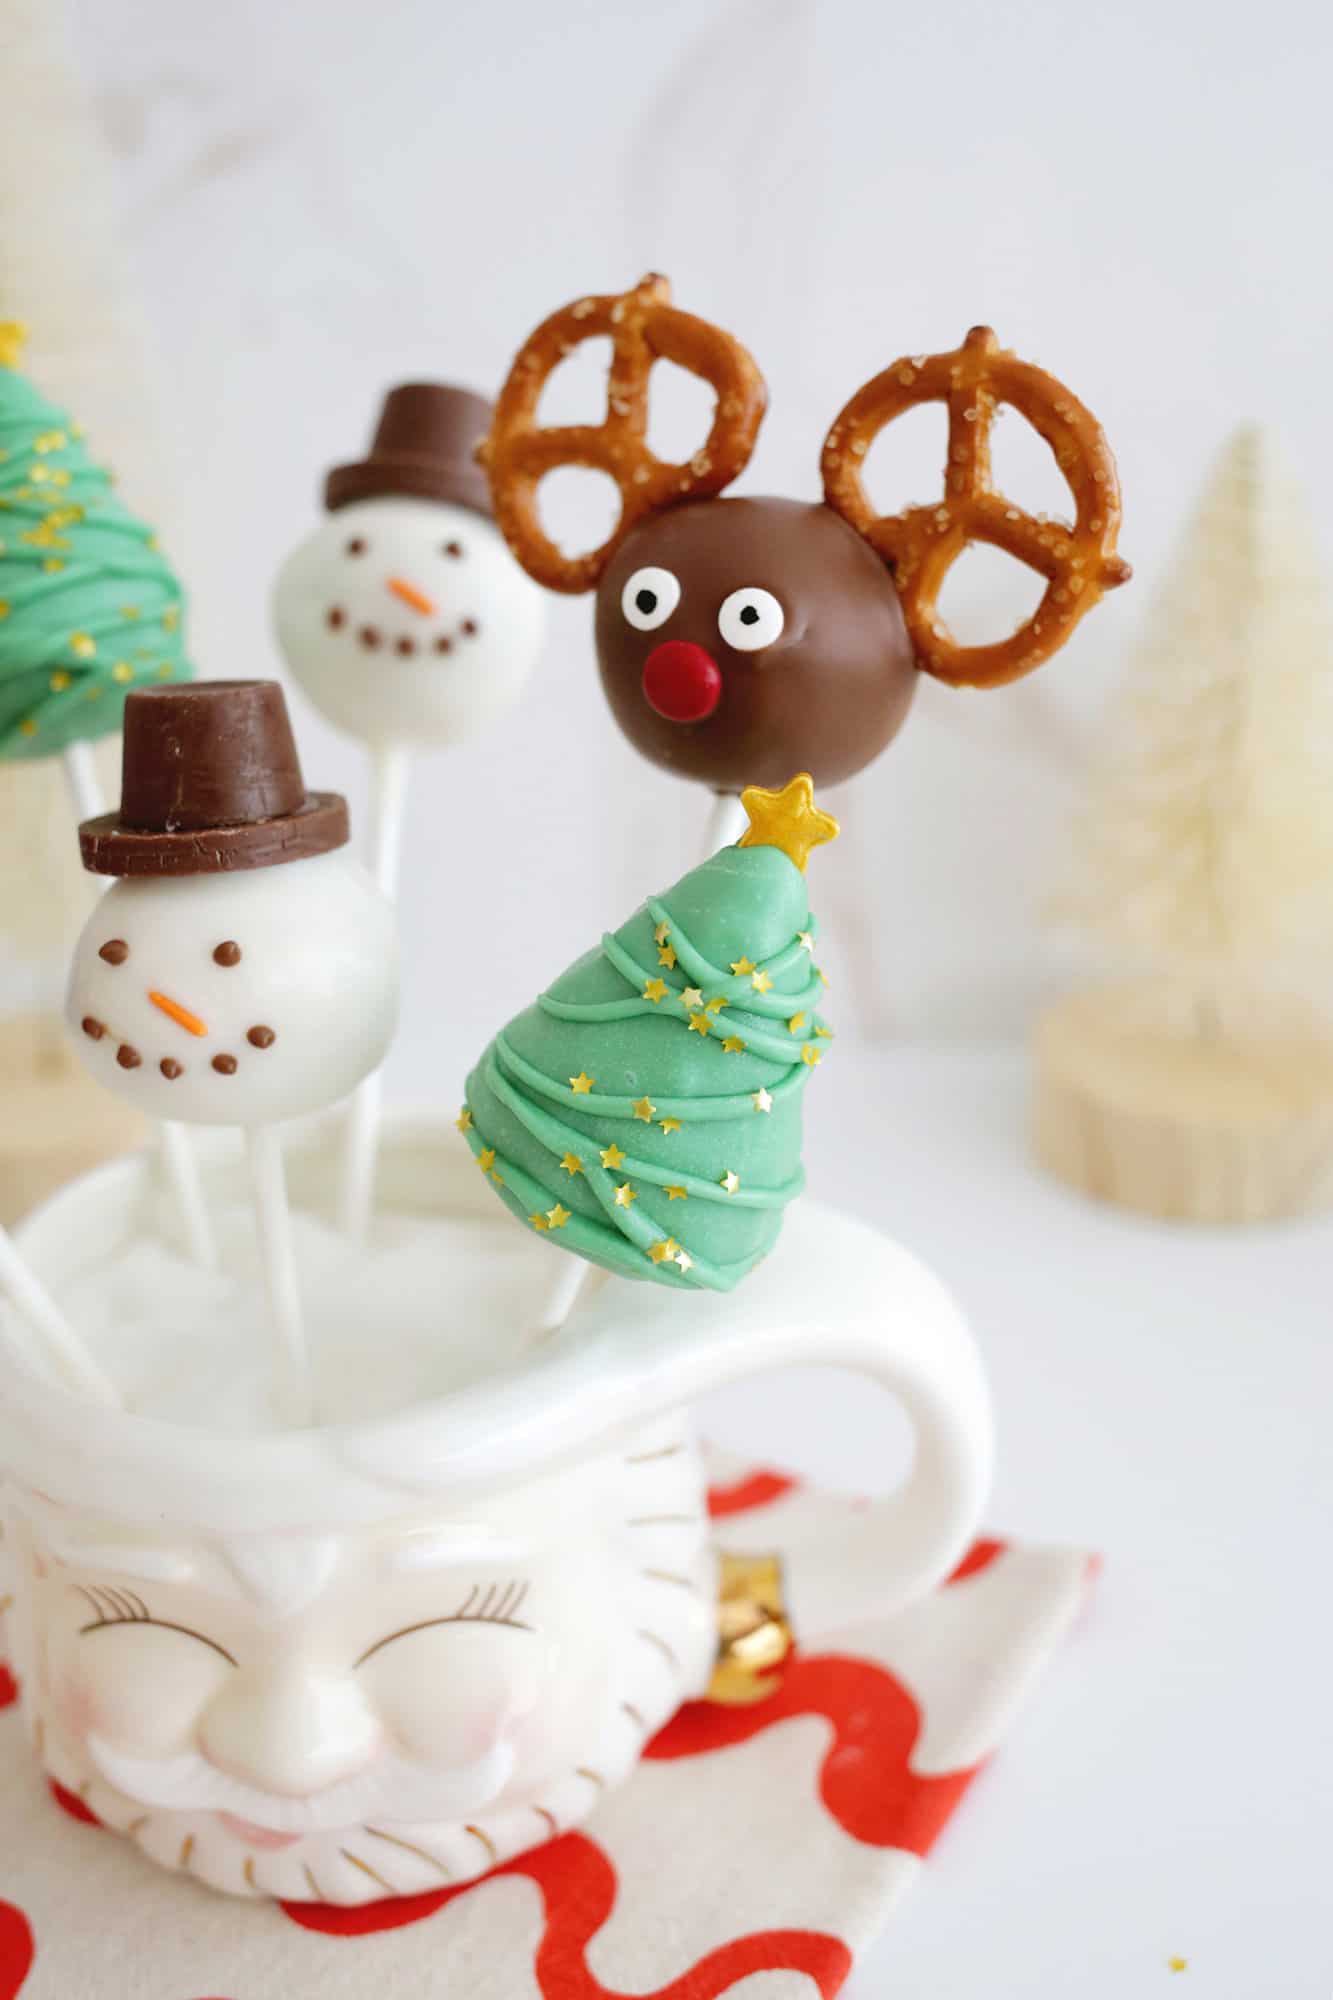 Bolo de Natal aparece renas, boneco de neve e árvore